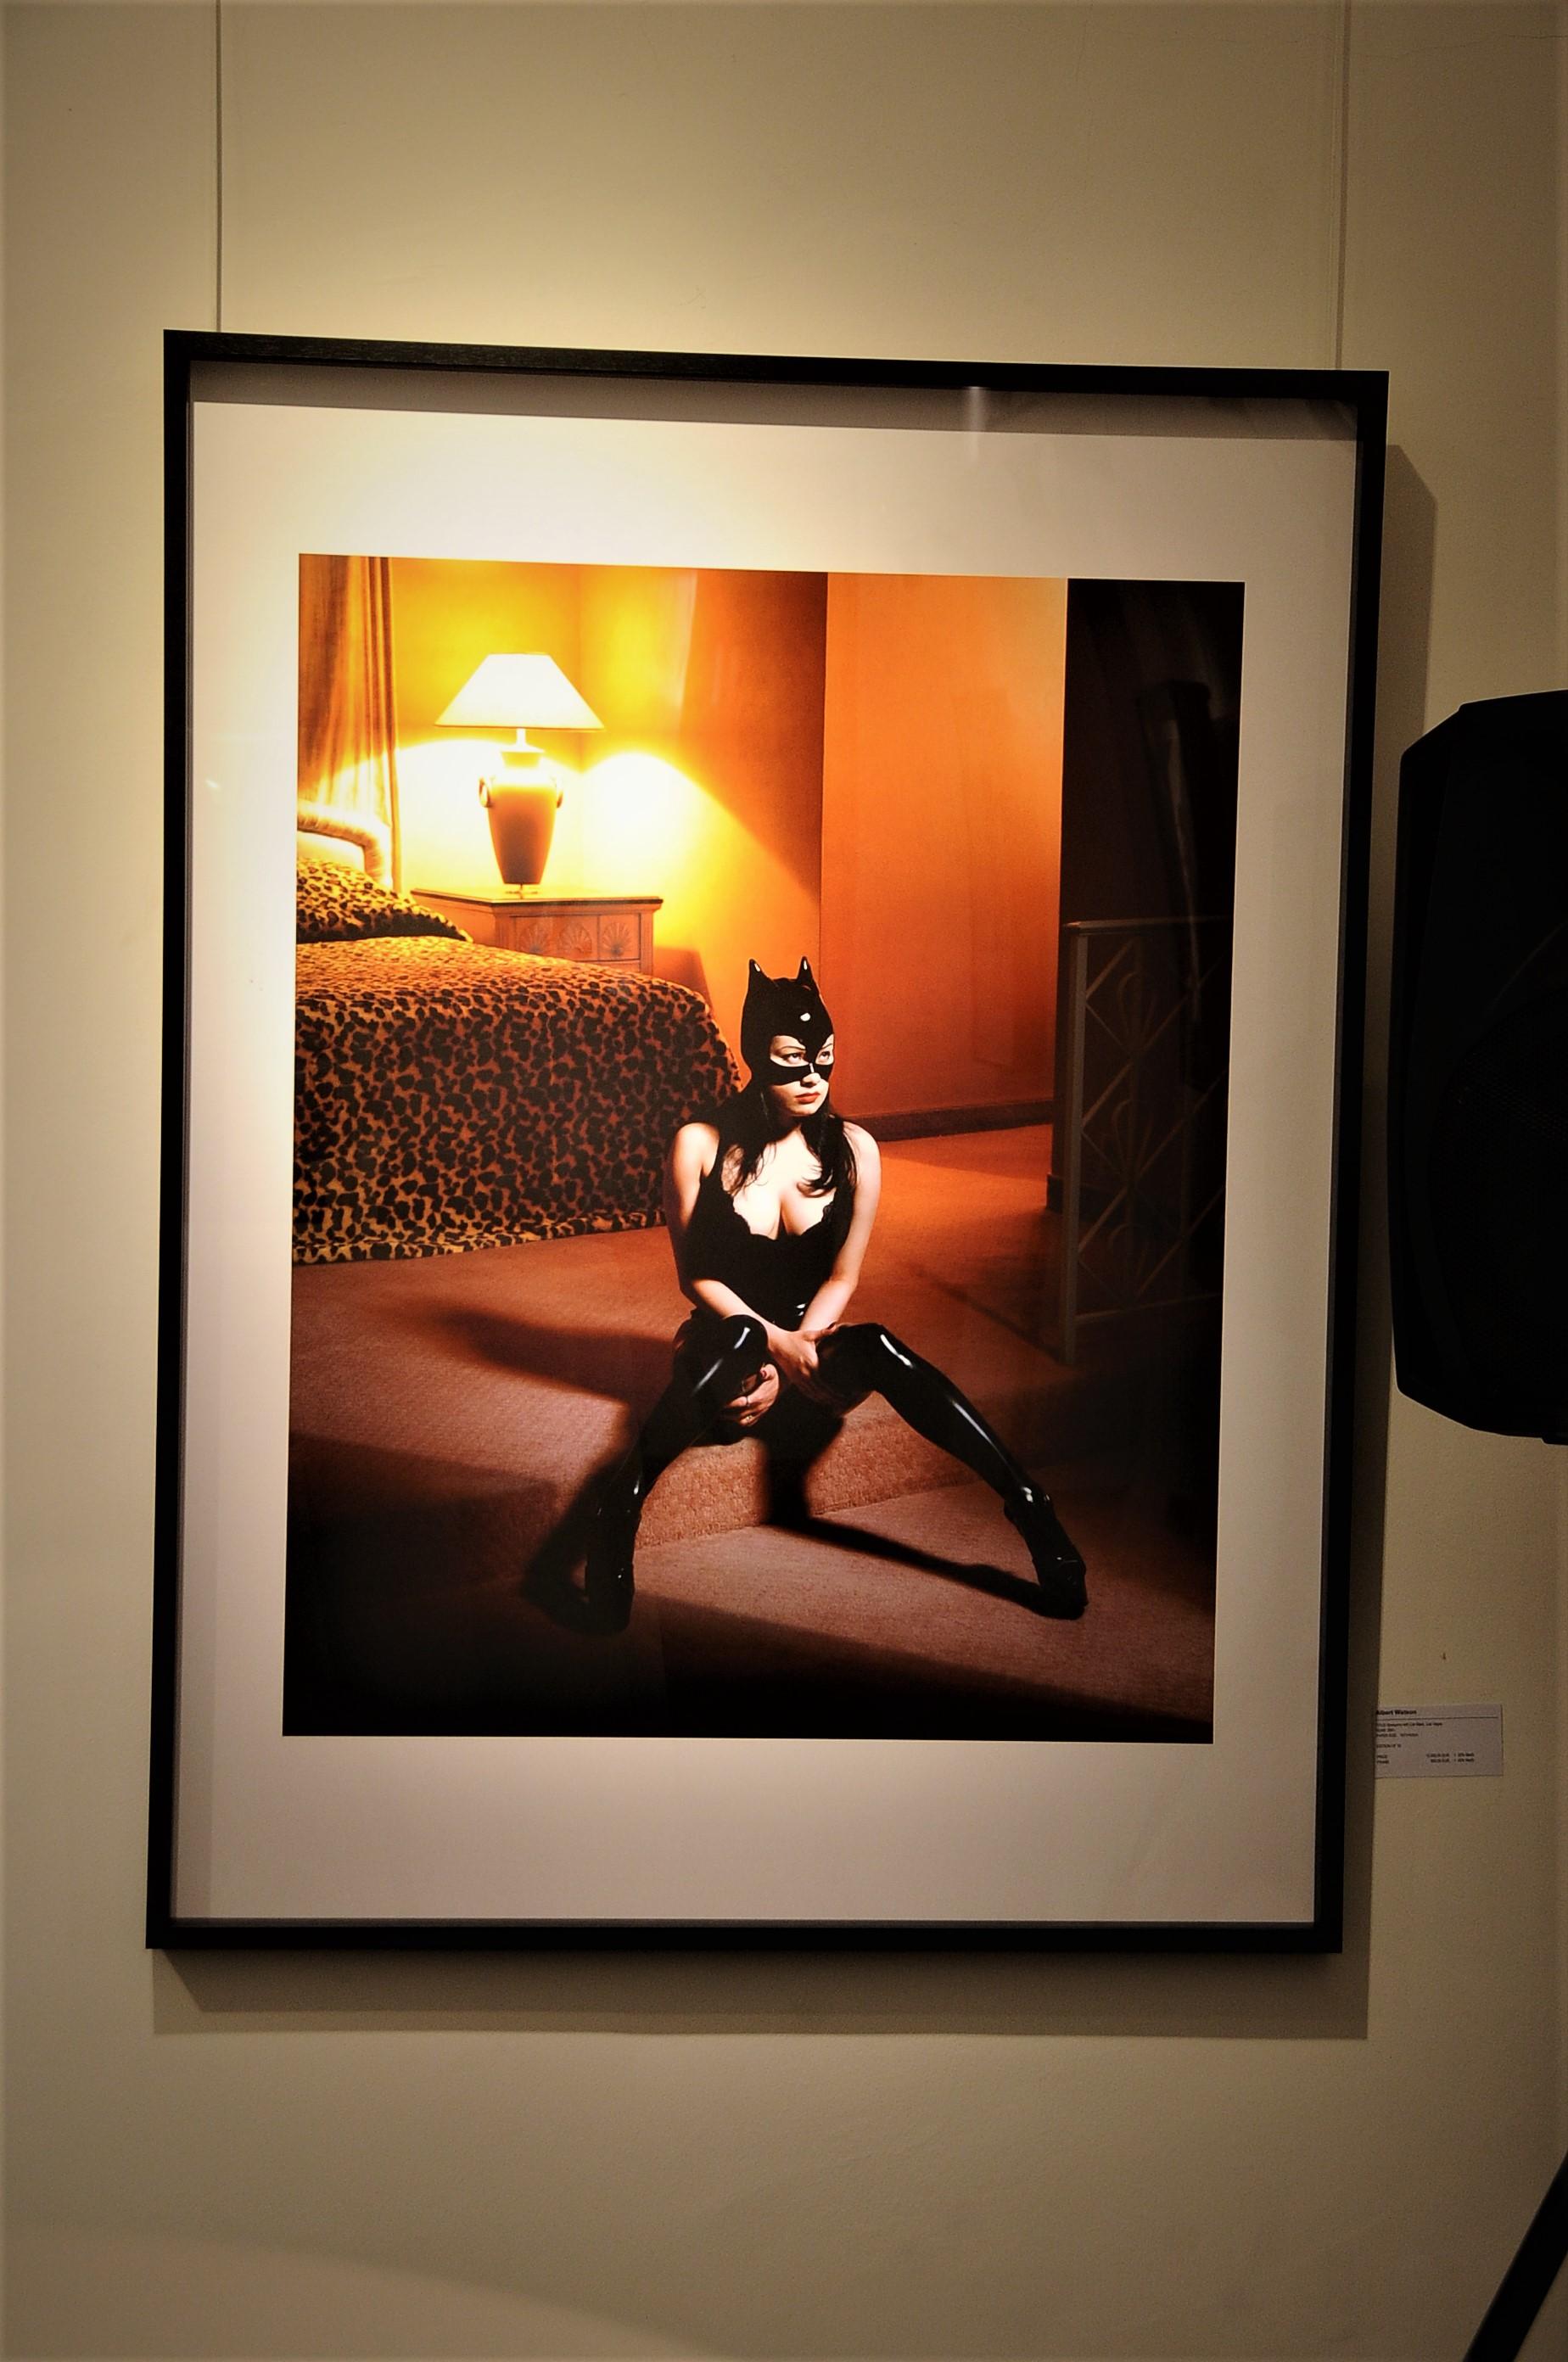 Breaunna in Katzenmaske - Modell in einem Katzenanzug, der auf dem Boden eines Hotelzimmers wohnt – Photograph von Albert Watson